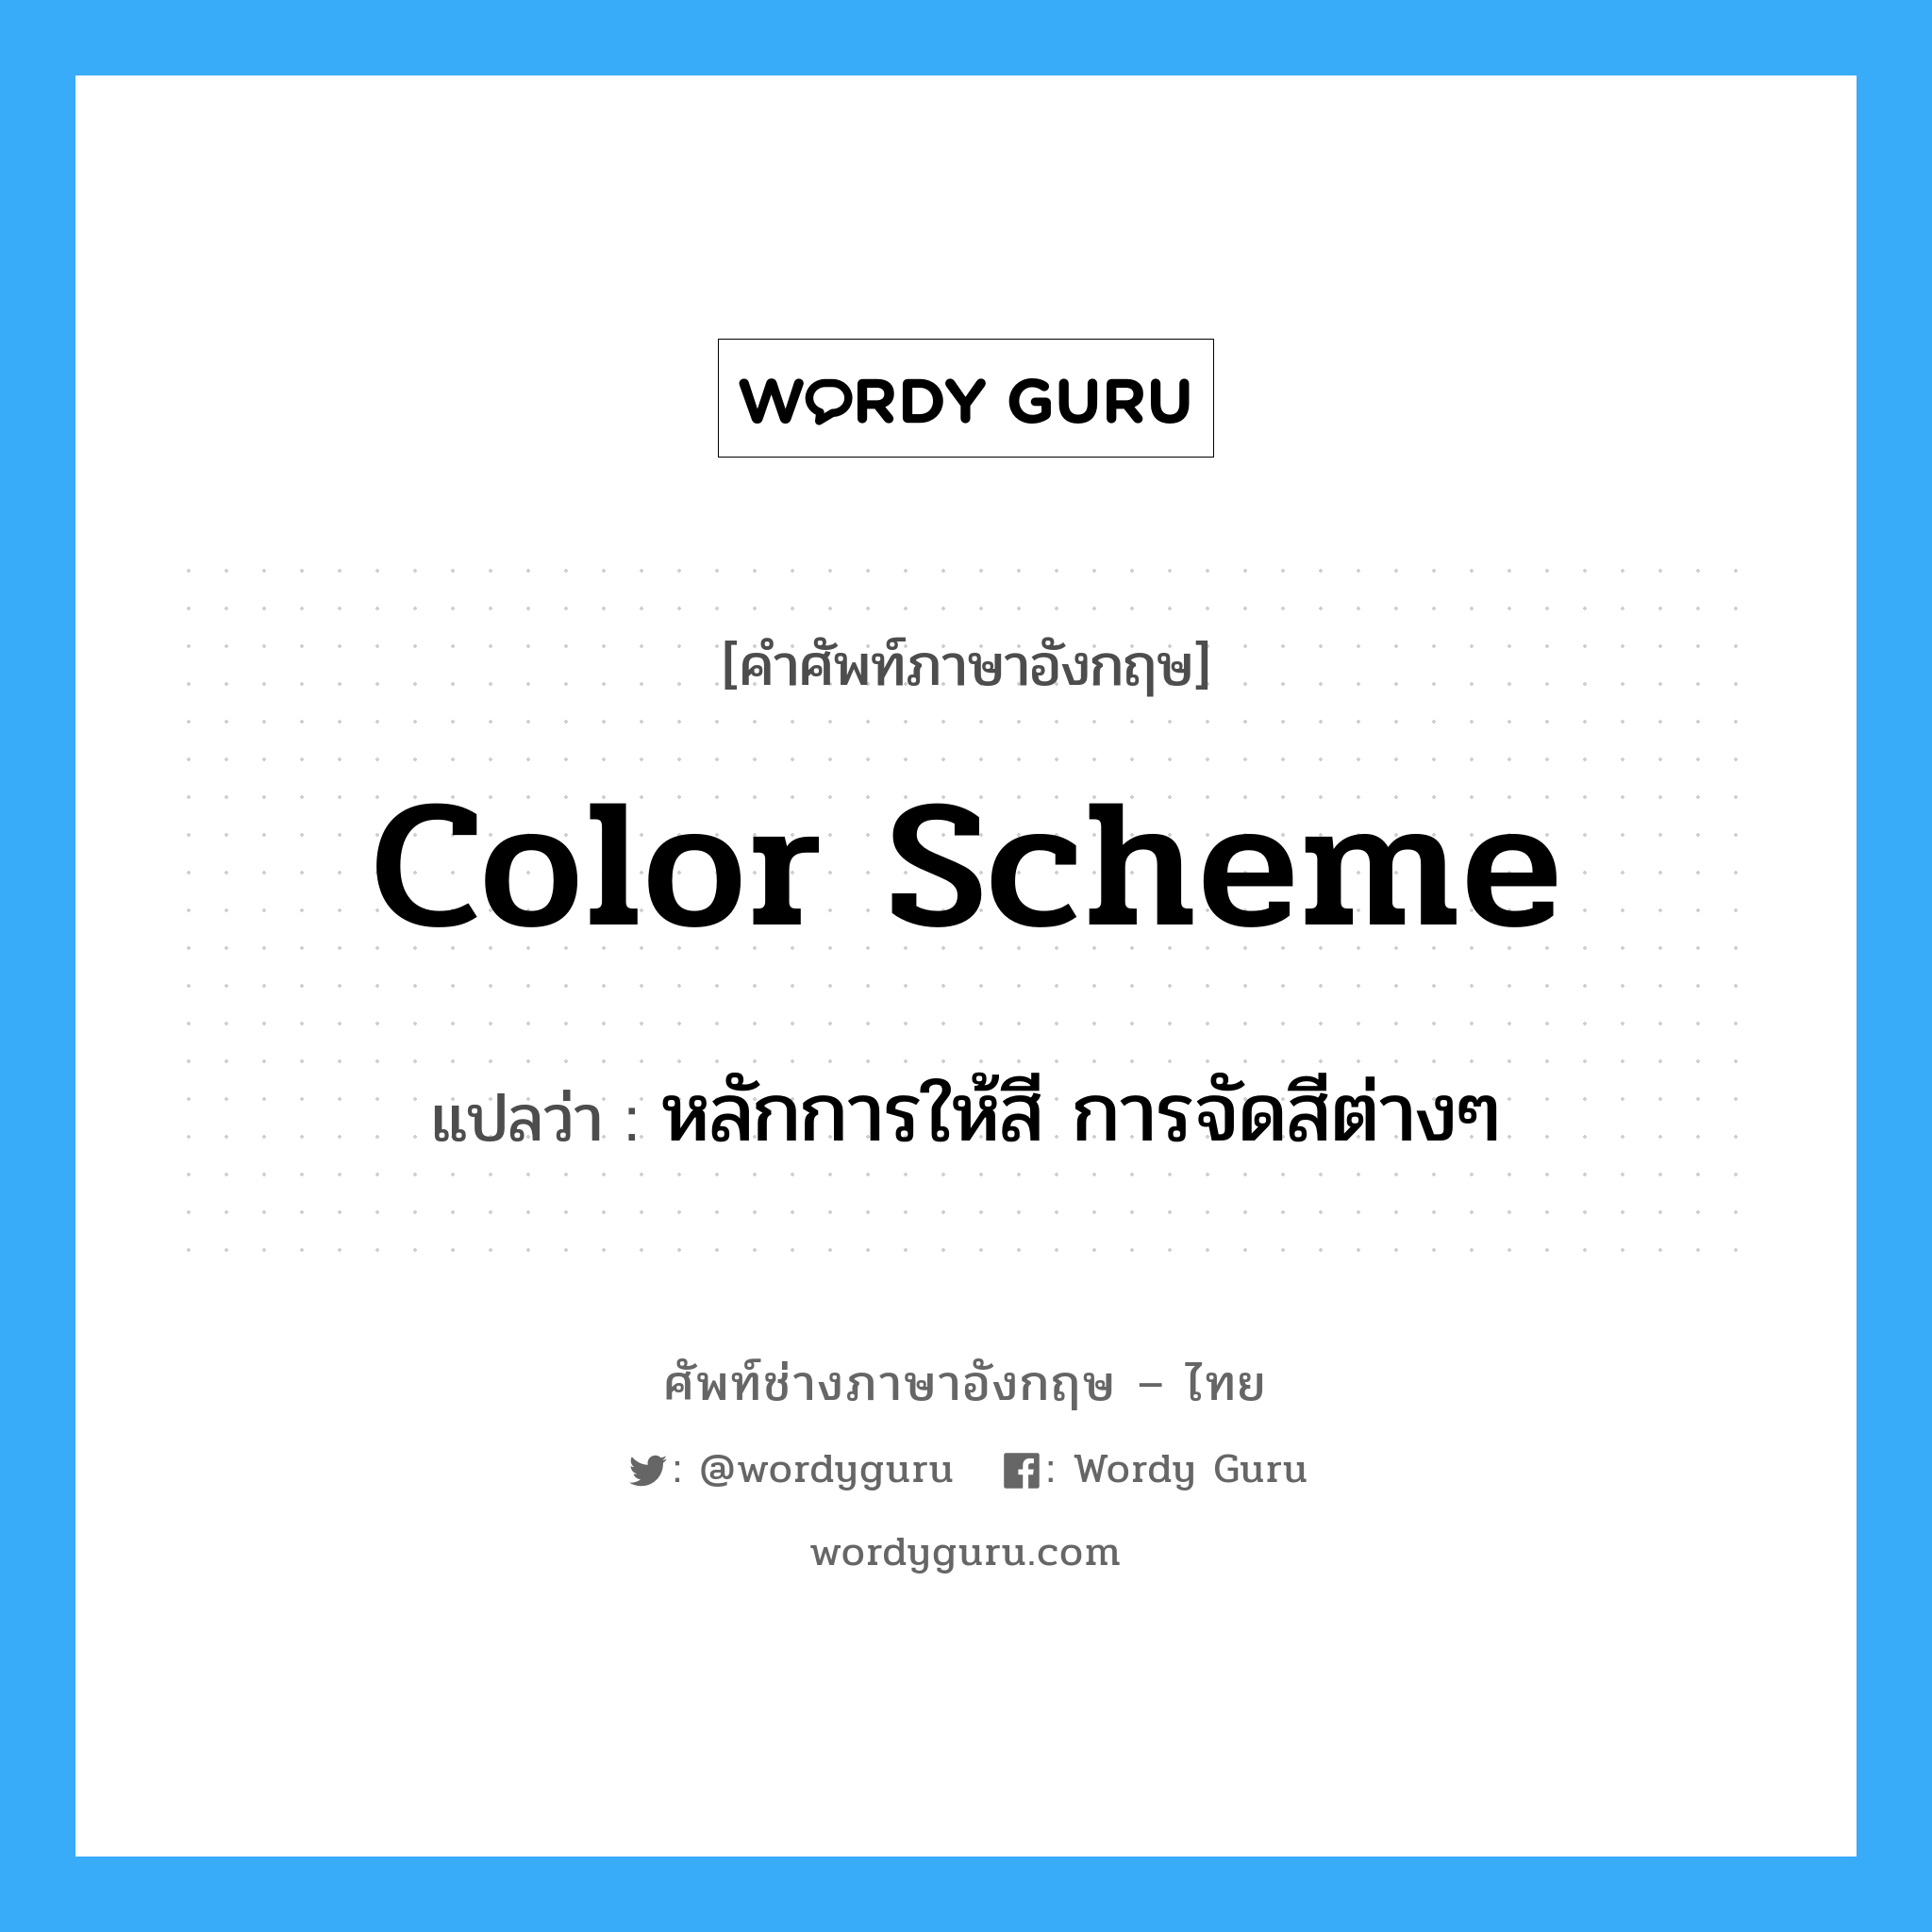 หลักการให้สี การจัดสีต่างๆ ภาษาอังกฤษ?, คำศัพท์ช่างภาษาอังกฤษ - ไทย หลักการให้สี การจัดสีต่างๆ คำศัพท์ภาษาอังกฤษ หลักการให้สี การจัดสีต่างๆ แปลว่า color scheme